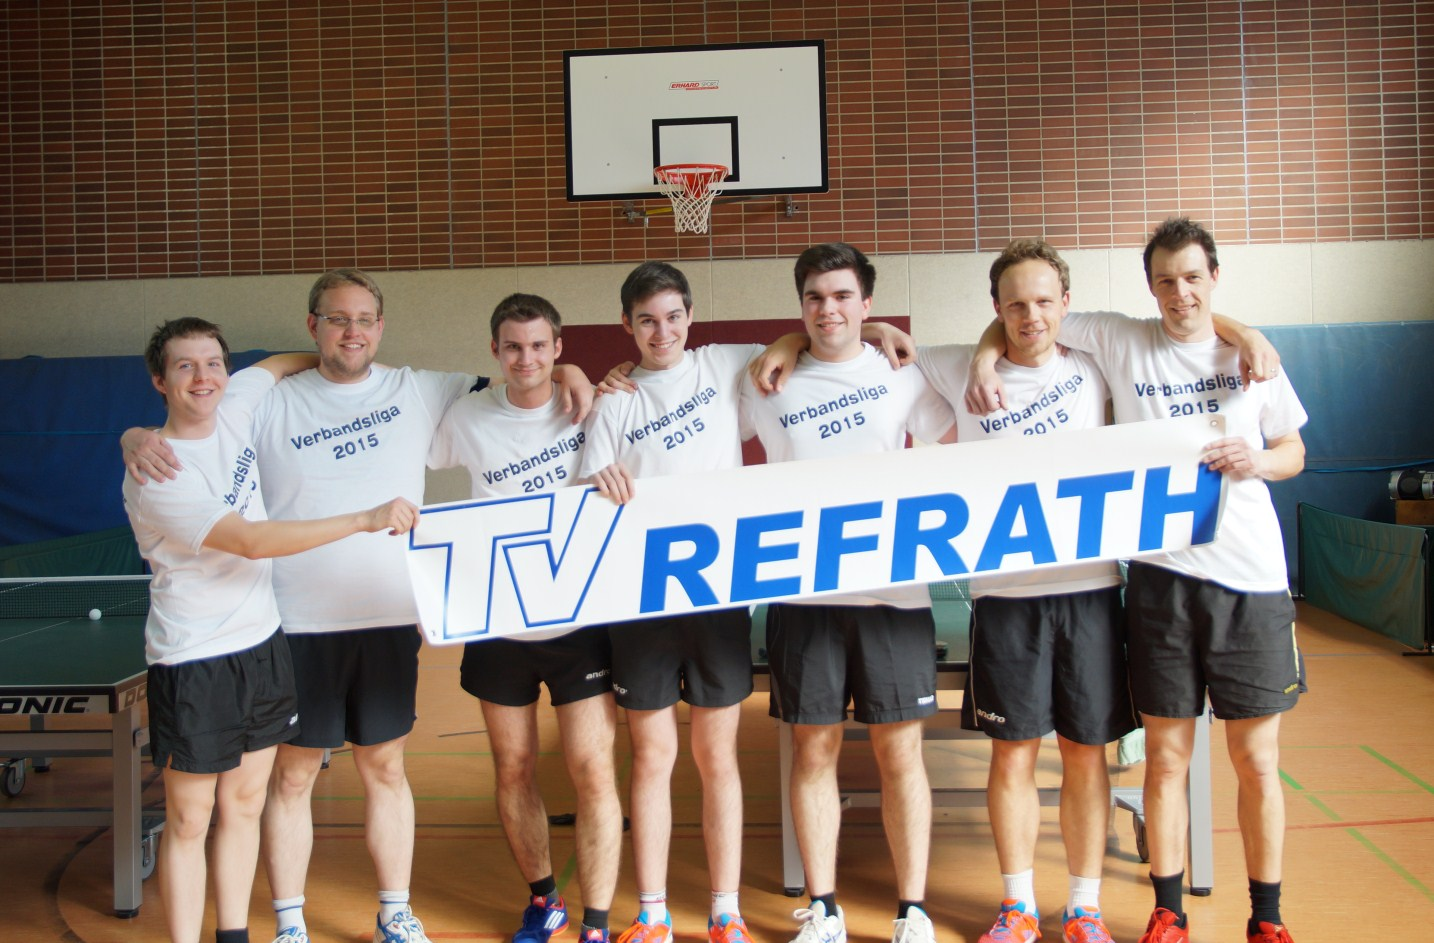 Tischtennis Historischer Verbandsliga Aufstieg für die Refrather Tischtennisspieler Zum Abschluss der Saison 2013/2014 war der TVR endlich zurück in der Landesliga, am Ende dieser Spielzeit stand nun